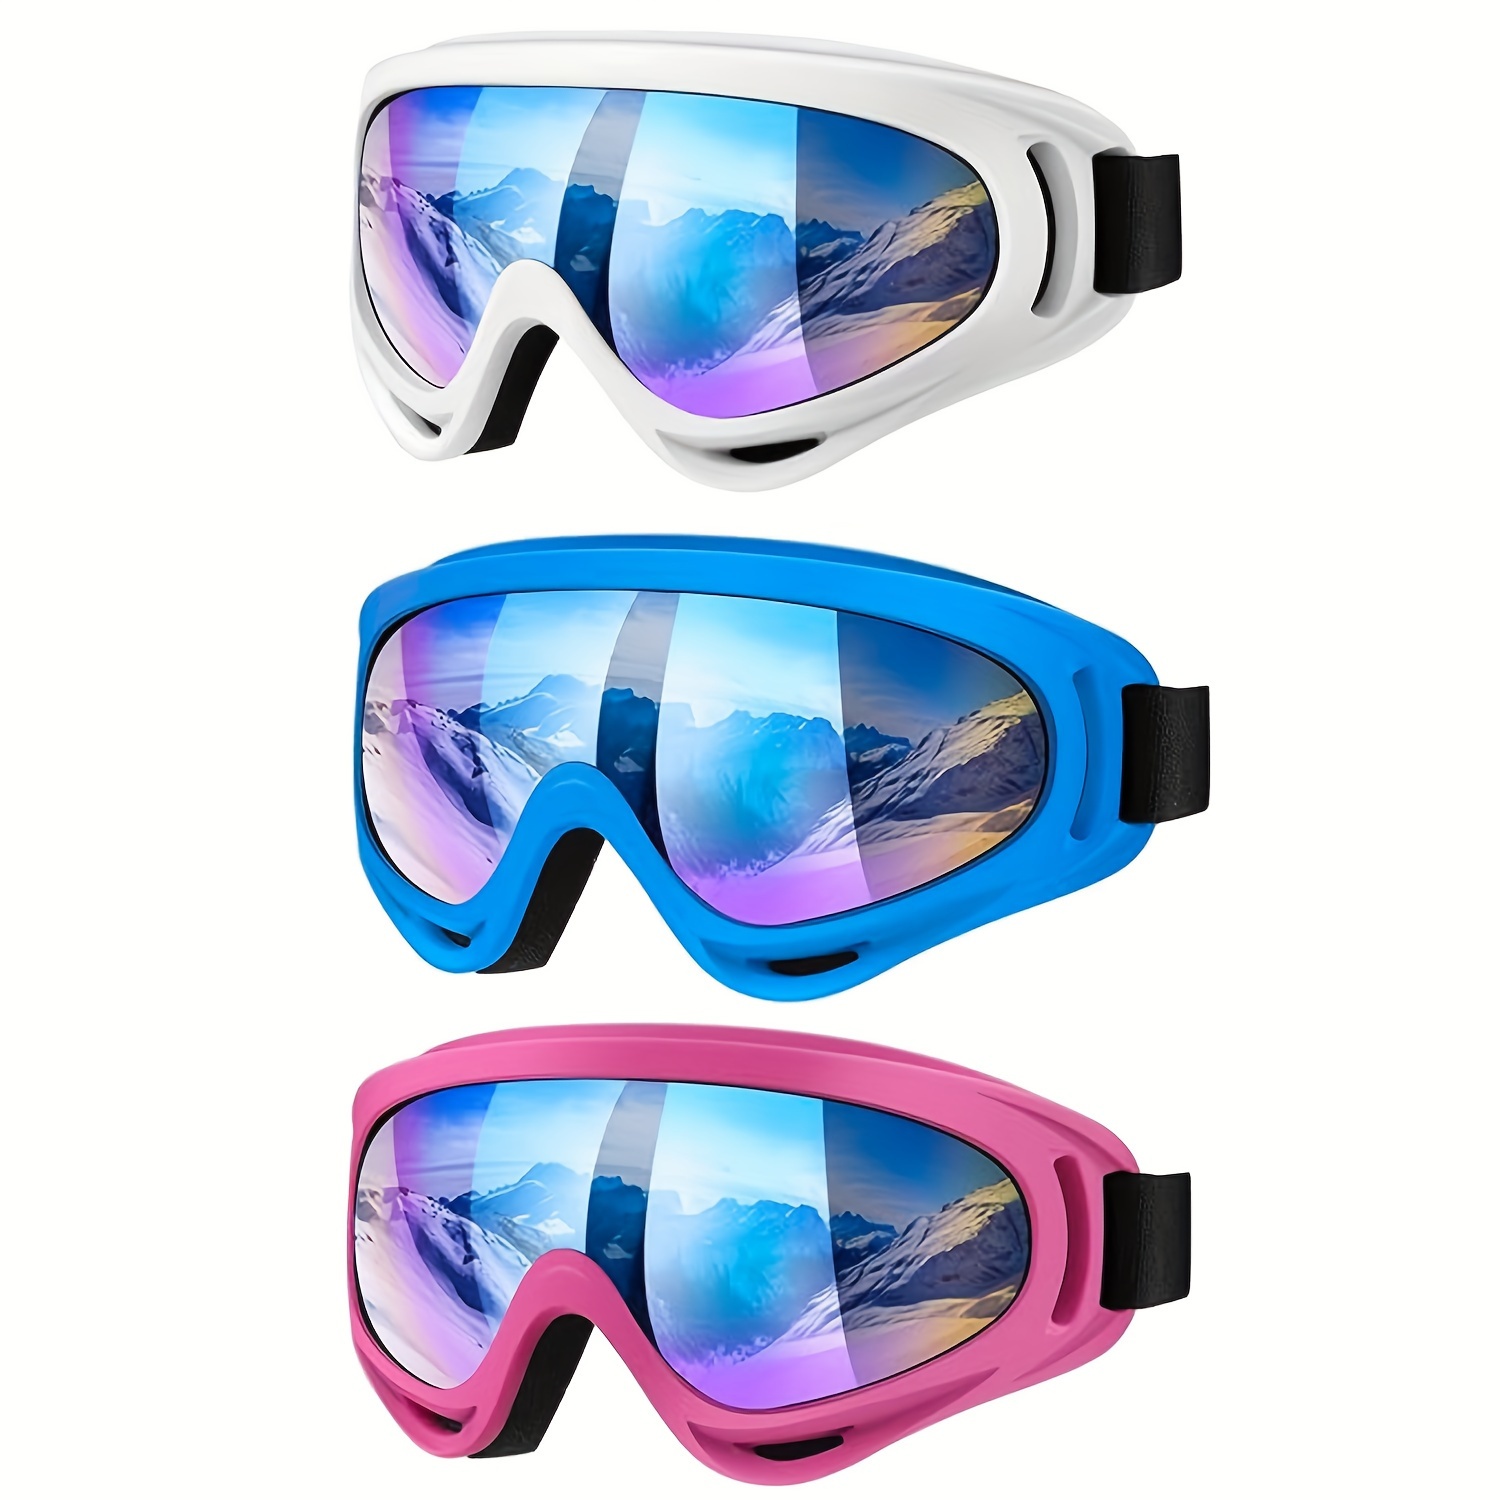 Gafas de esquí para niños MAXJULI lentes esféricos de doble - Temu